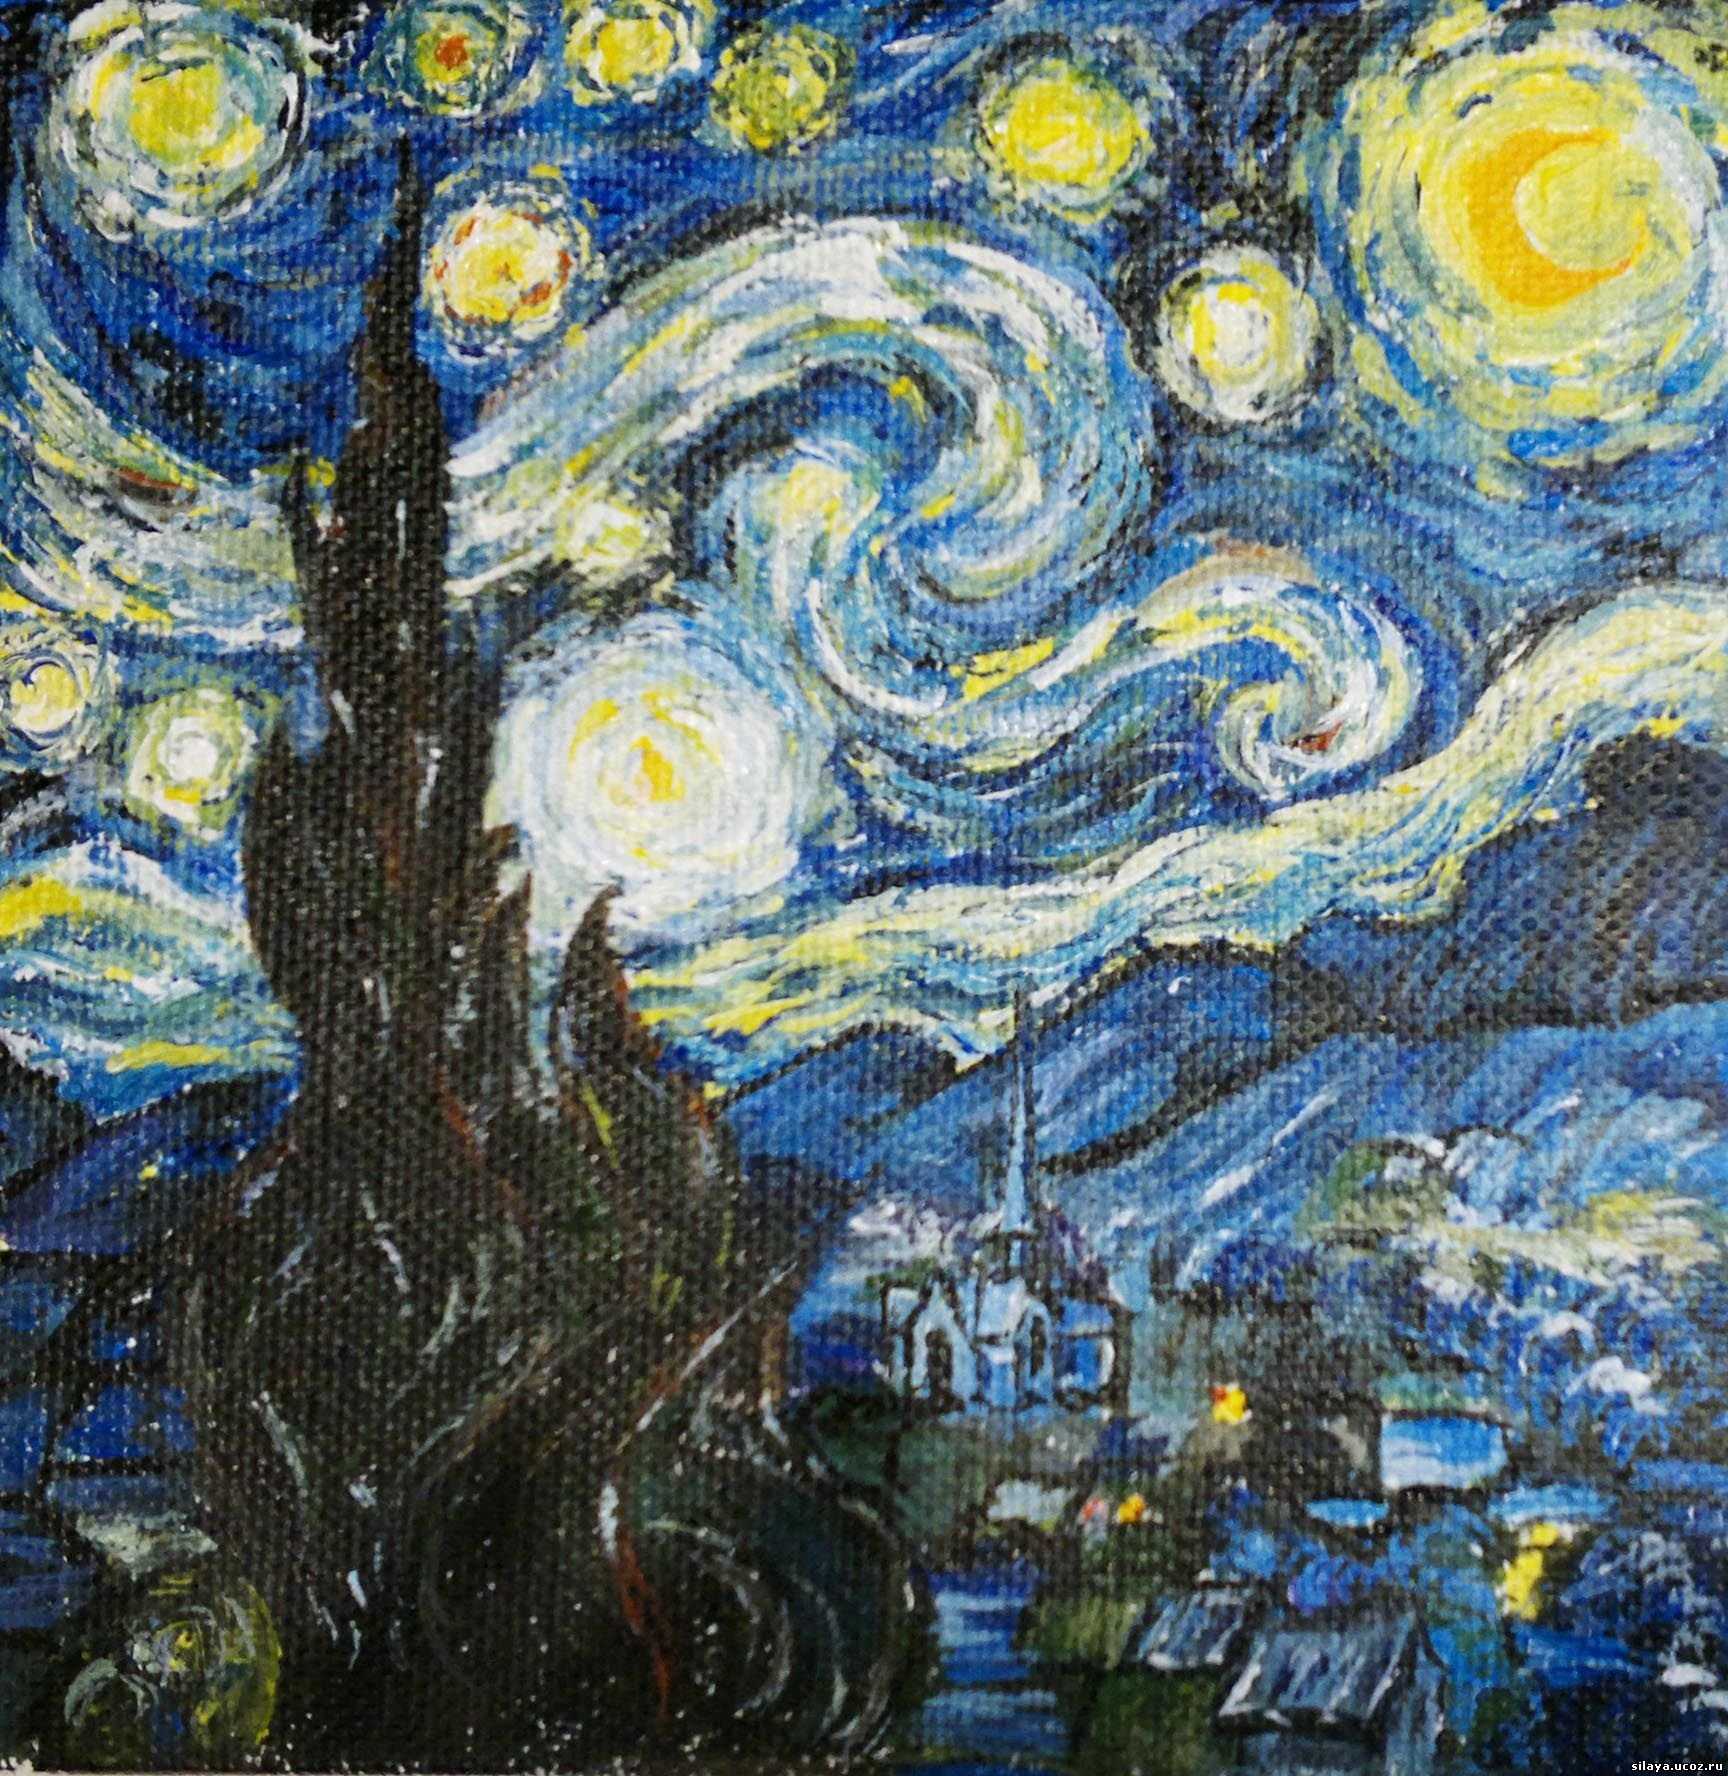 Винсент ван гог звездная ночь анализ картины